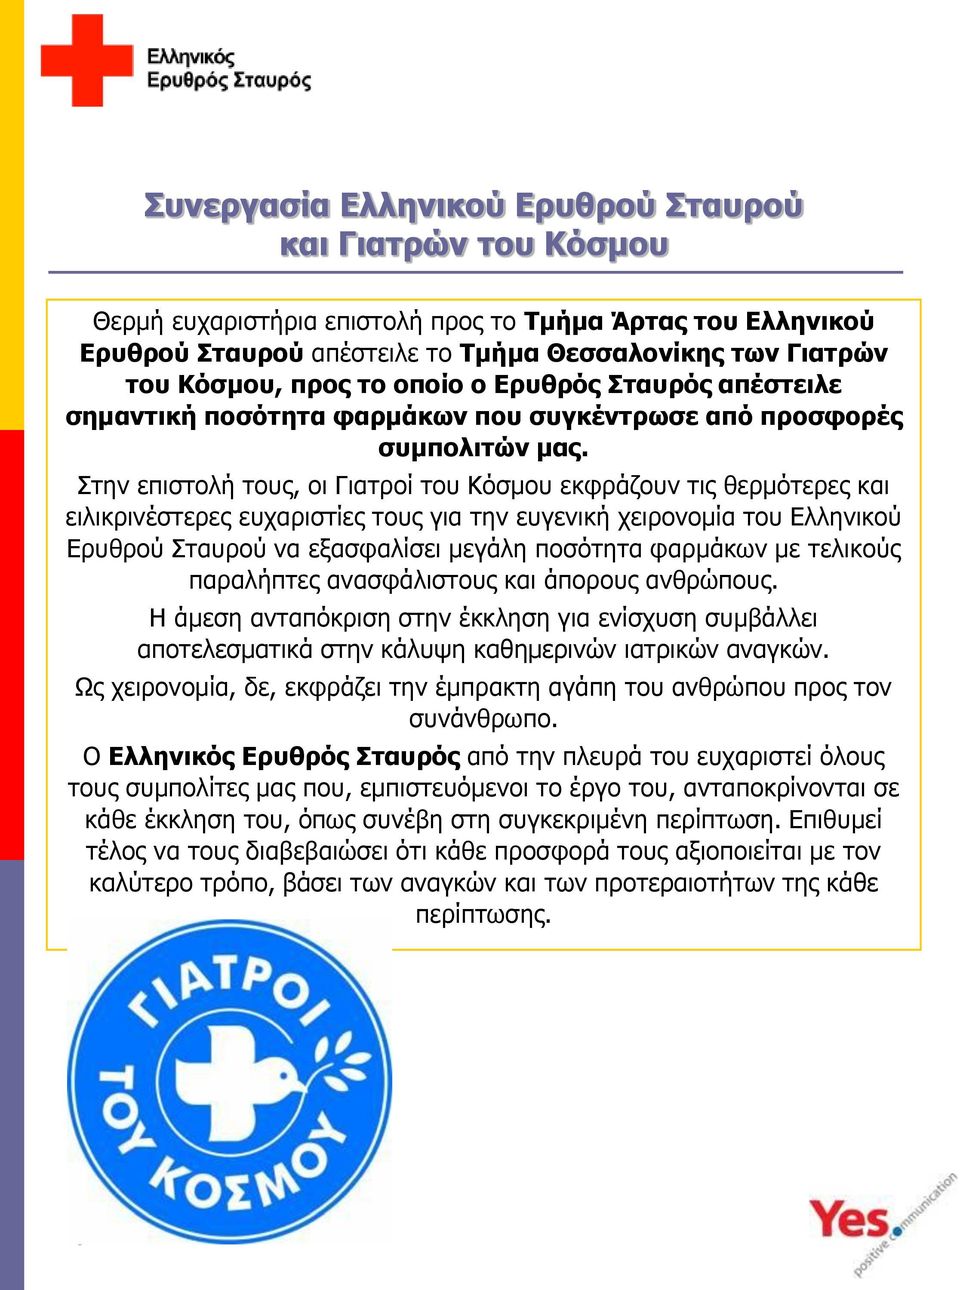 Στην επιστολή τους, οι Γιατροί του Κόσμου εκφράζουν τις θερμότερες και ειλικρινέστερες ευχαριστίες τους για την ευγενική χειρονομία του Ελληνικού Ερυθρού Σταυρού να εξασφαλίσει μεγάλη ποσότητα